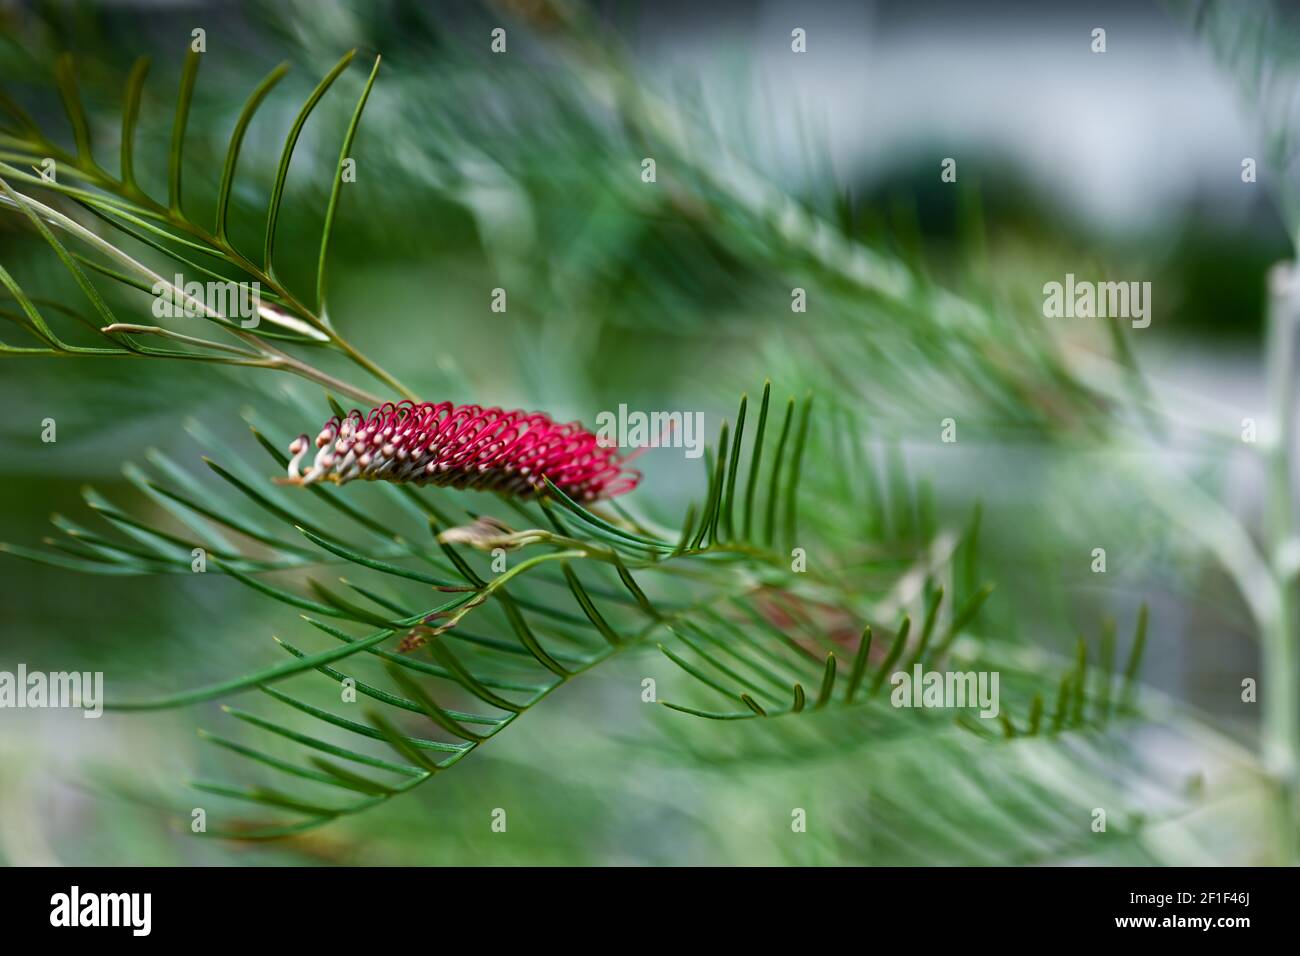 photo d'arrière-plan du monde naturel et de la nature, plante rouge entourée de vert, photo de plante inhabituelle Banque D'Images